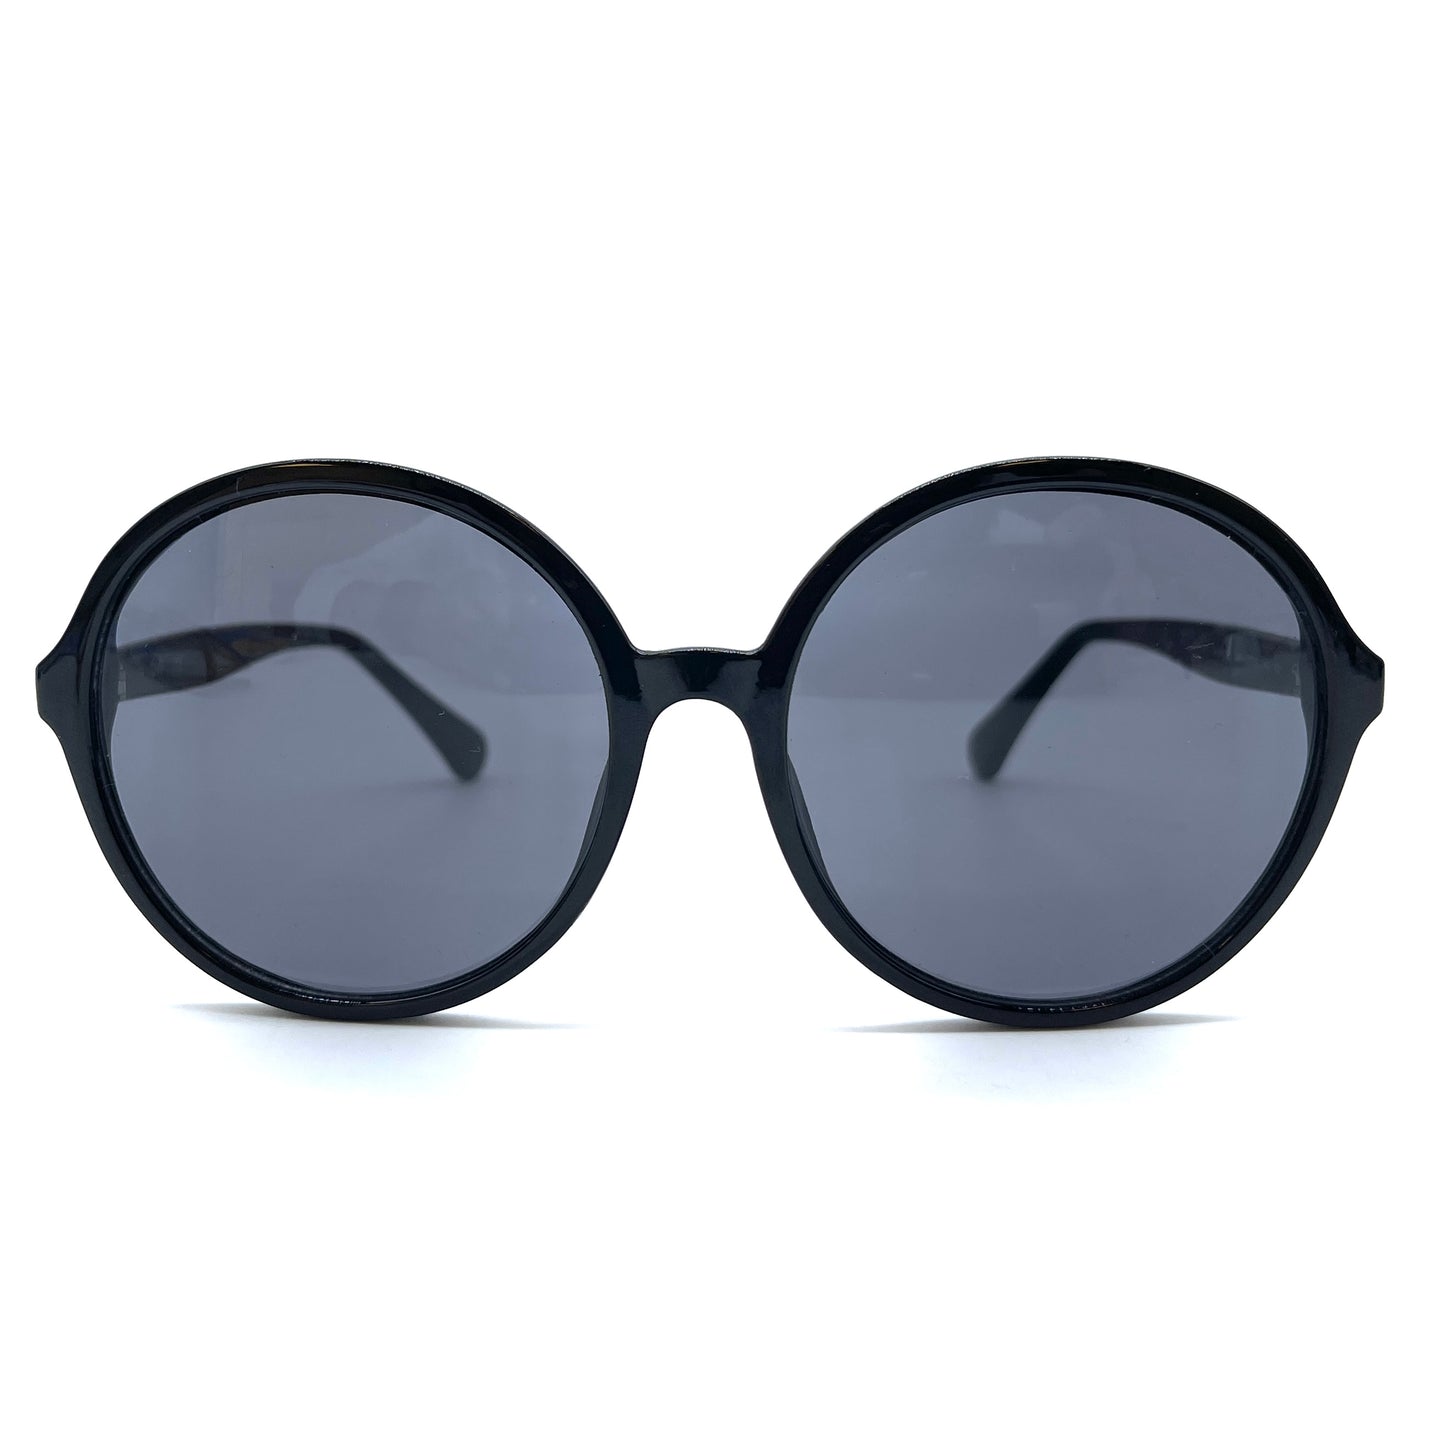 Sunglasses By Diane Von Furstenberg